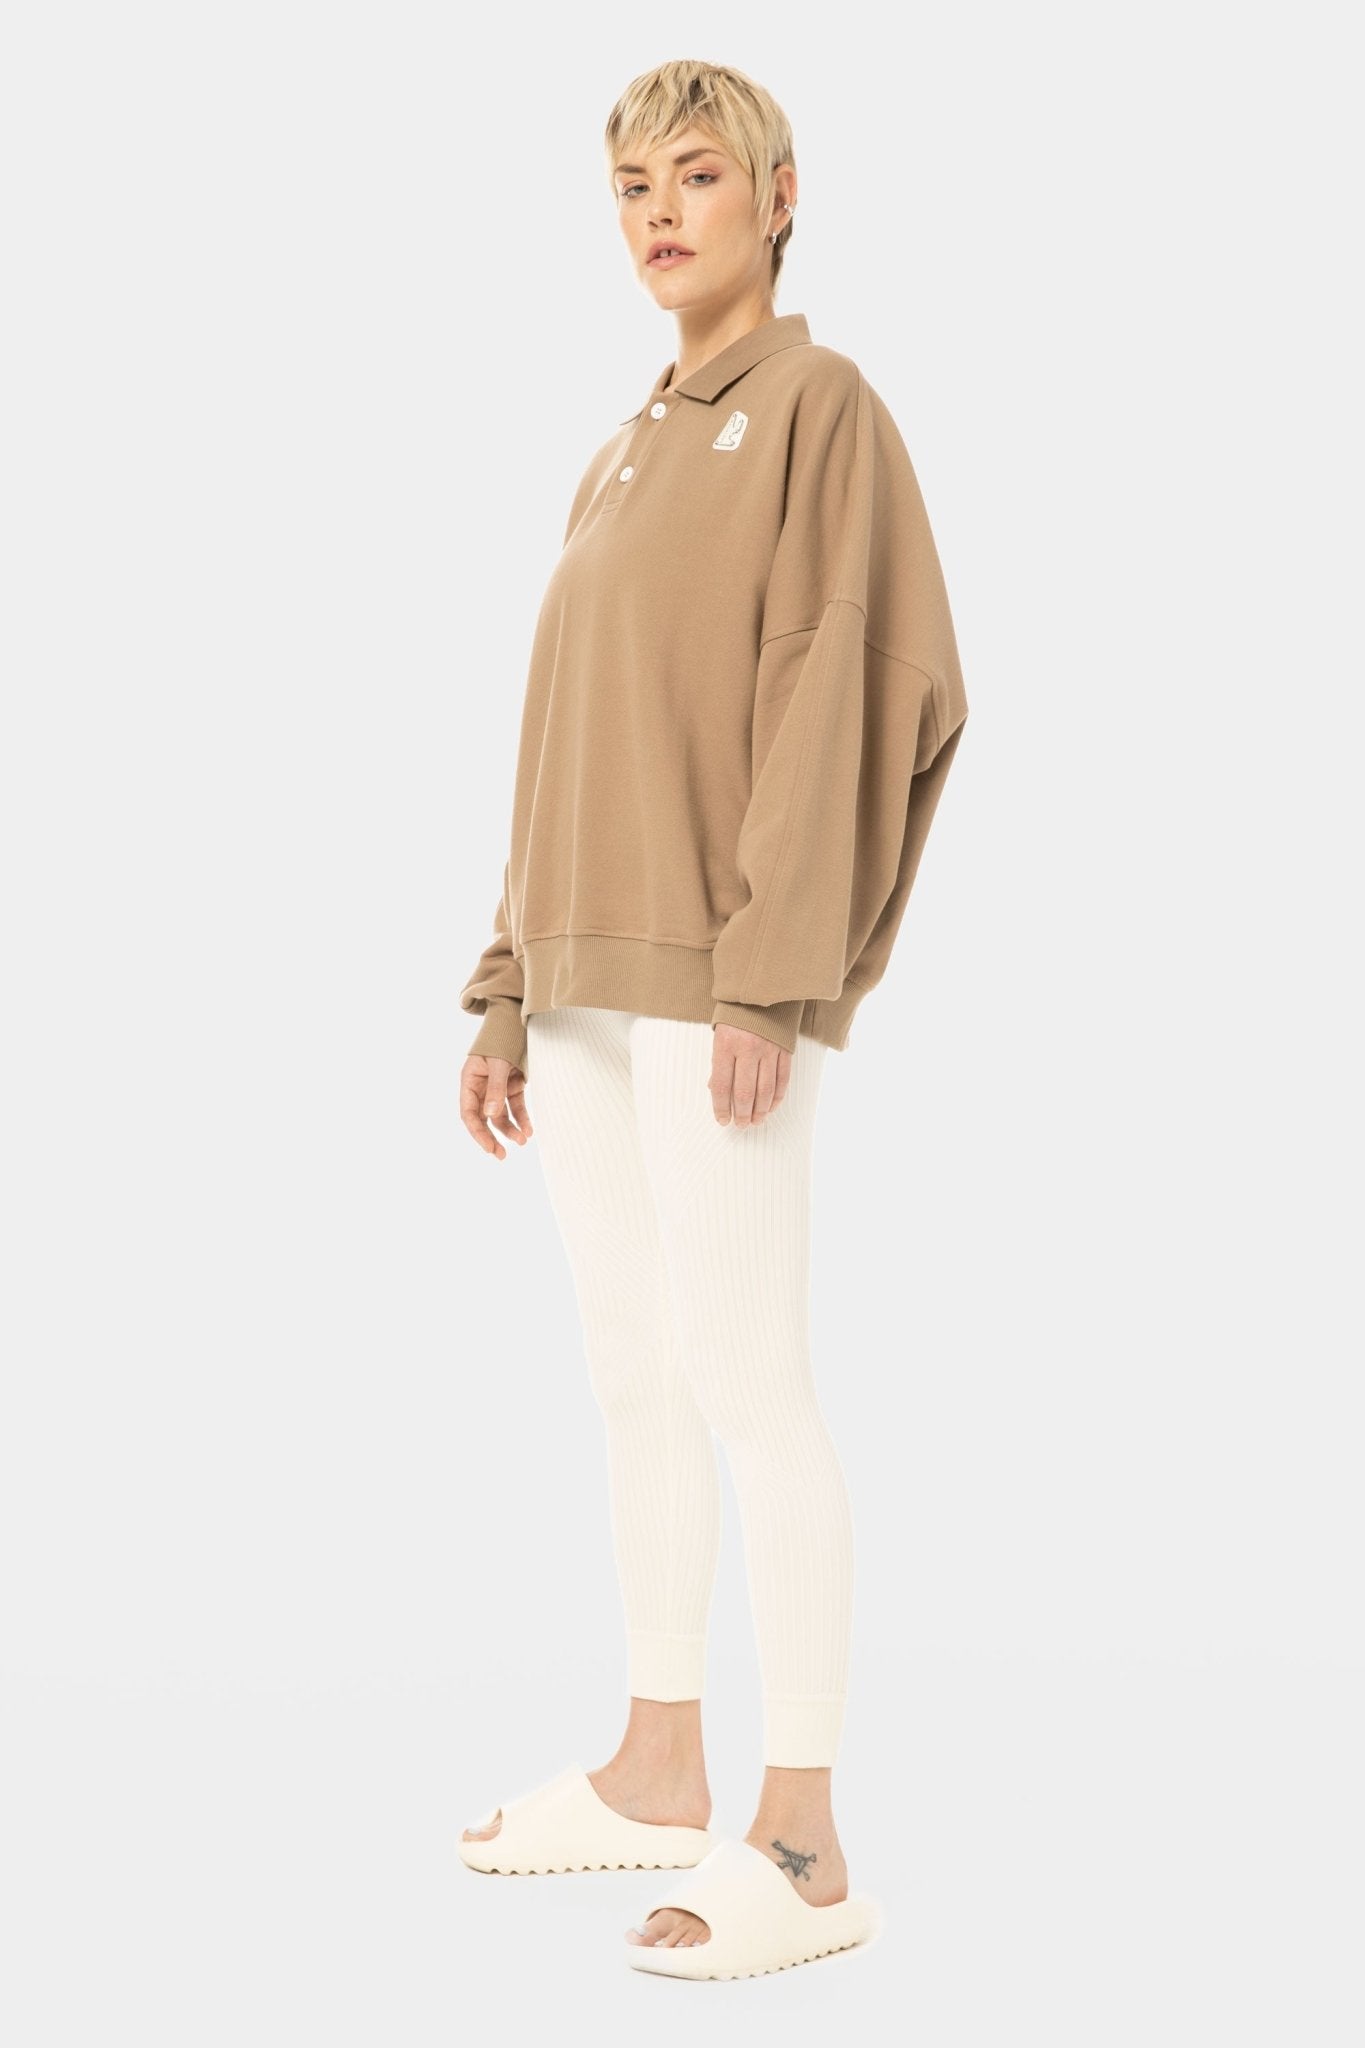 La Brea Yin Yang Molos Polo Sweatshirt - Magnlens